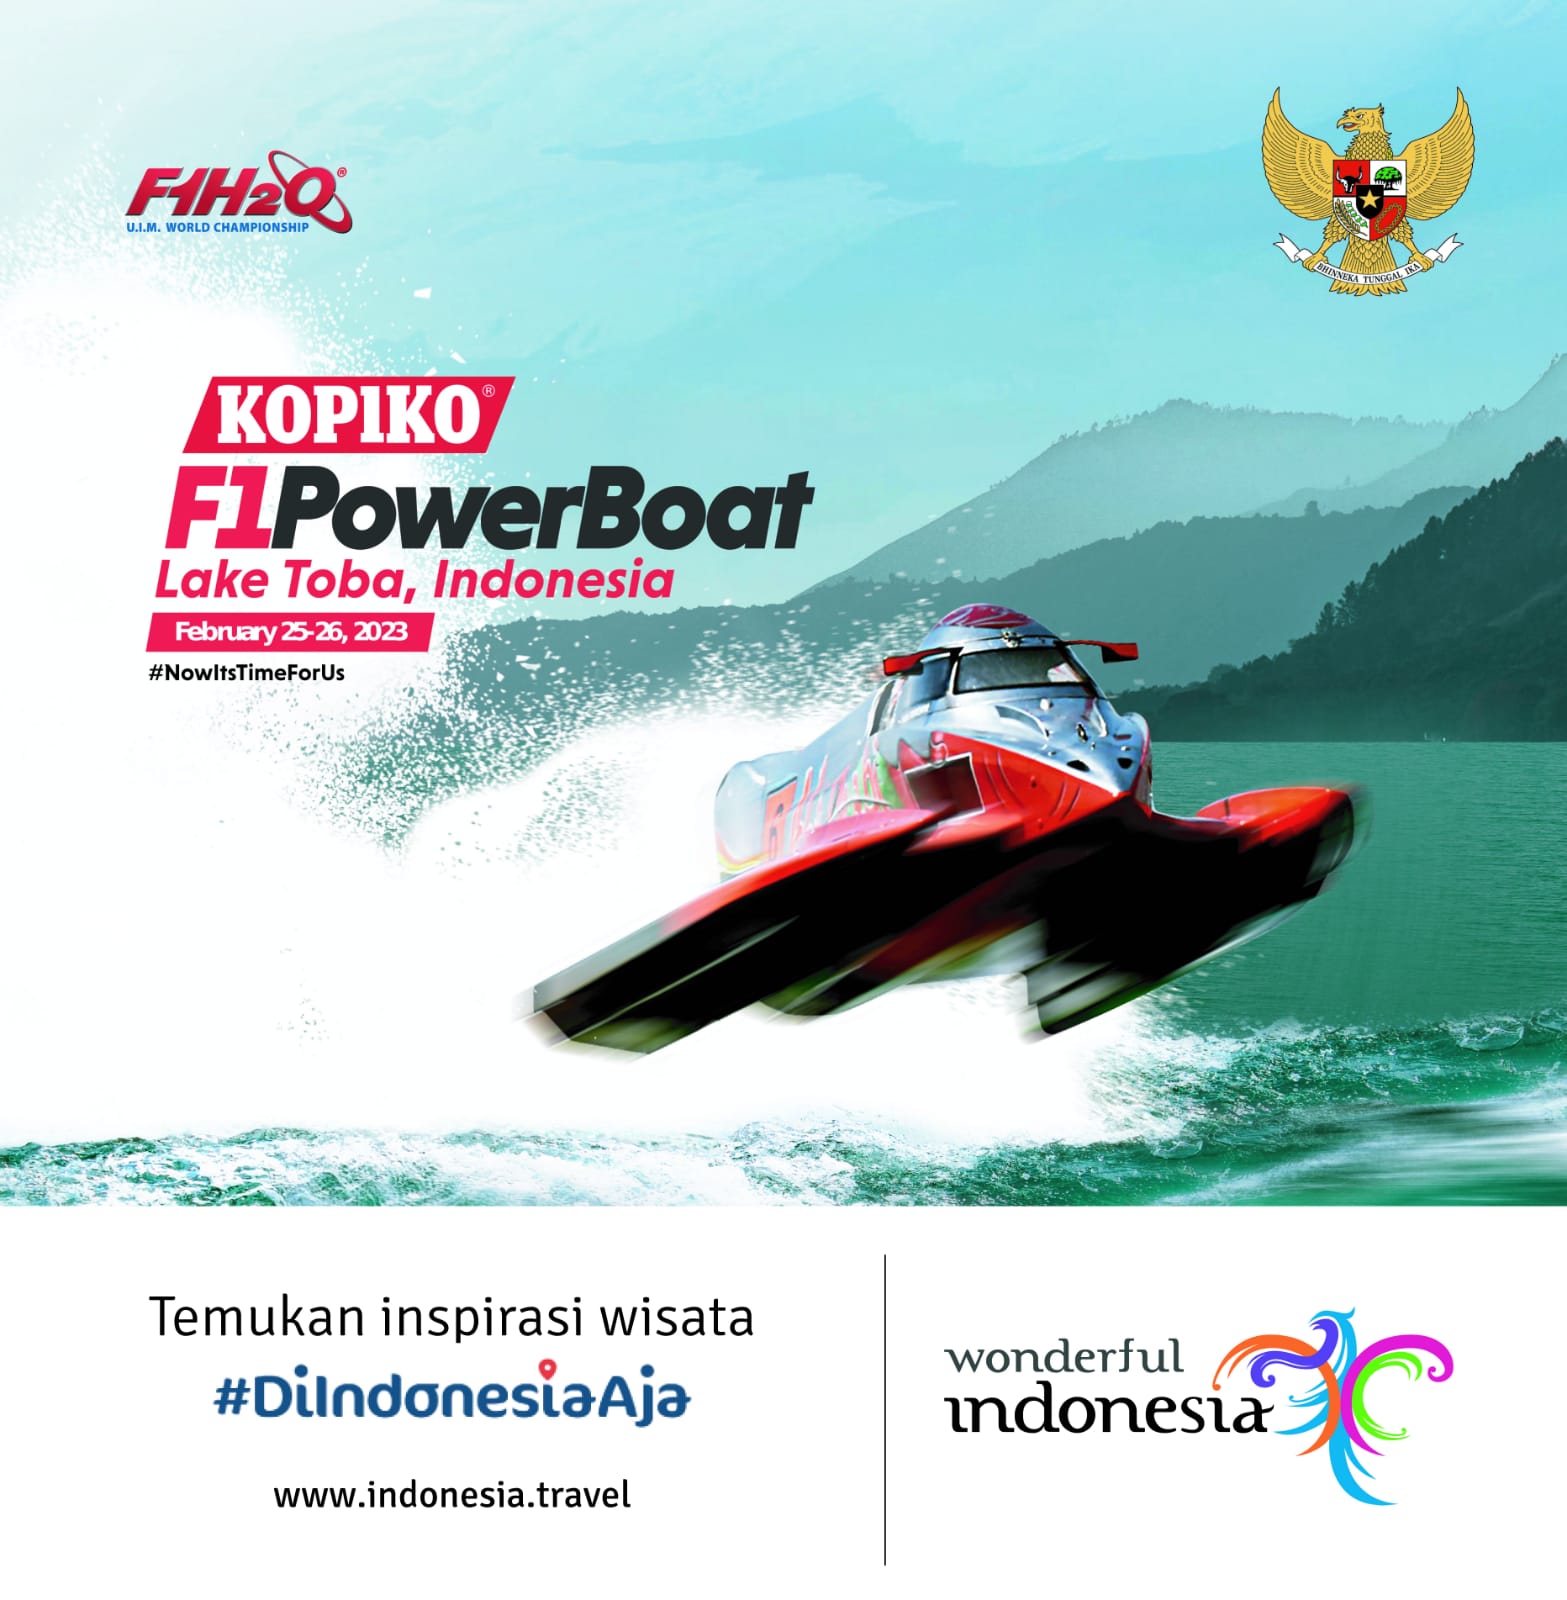 f1 powerboat lake toba